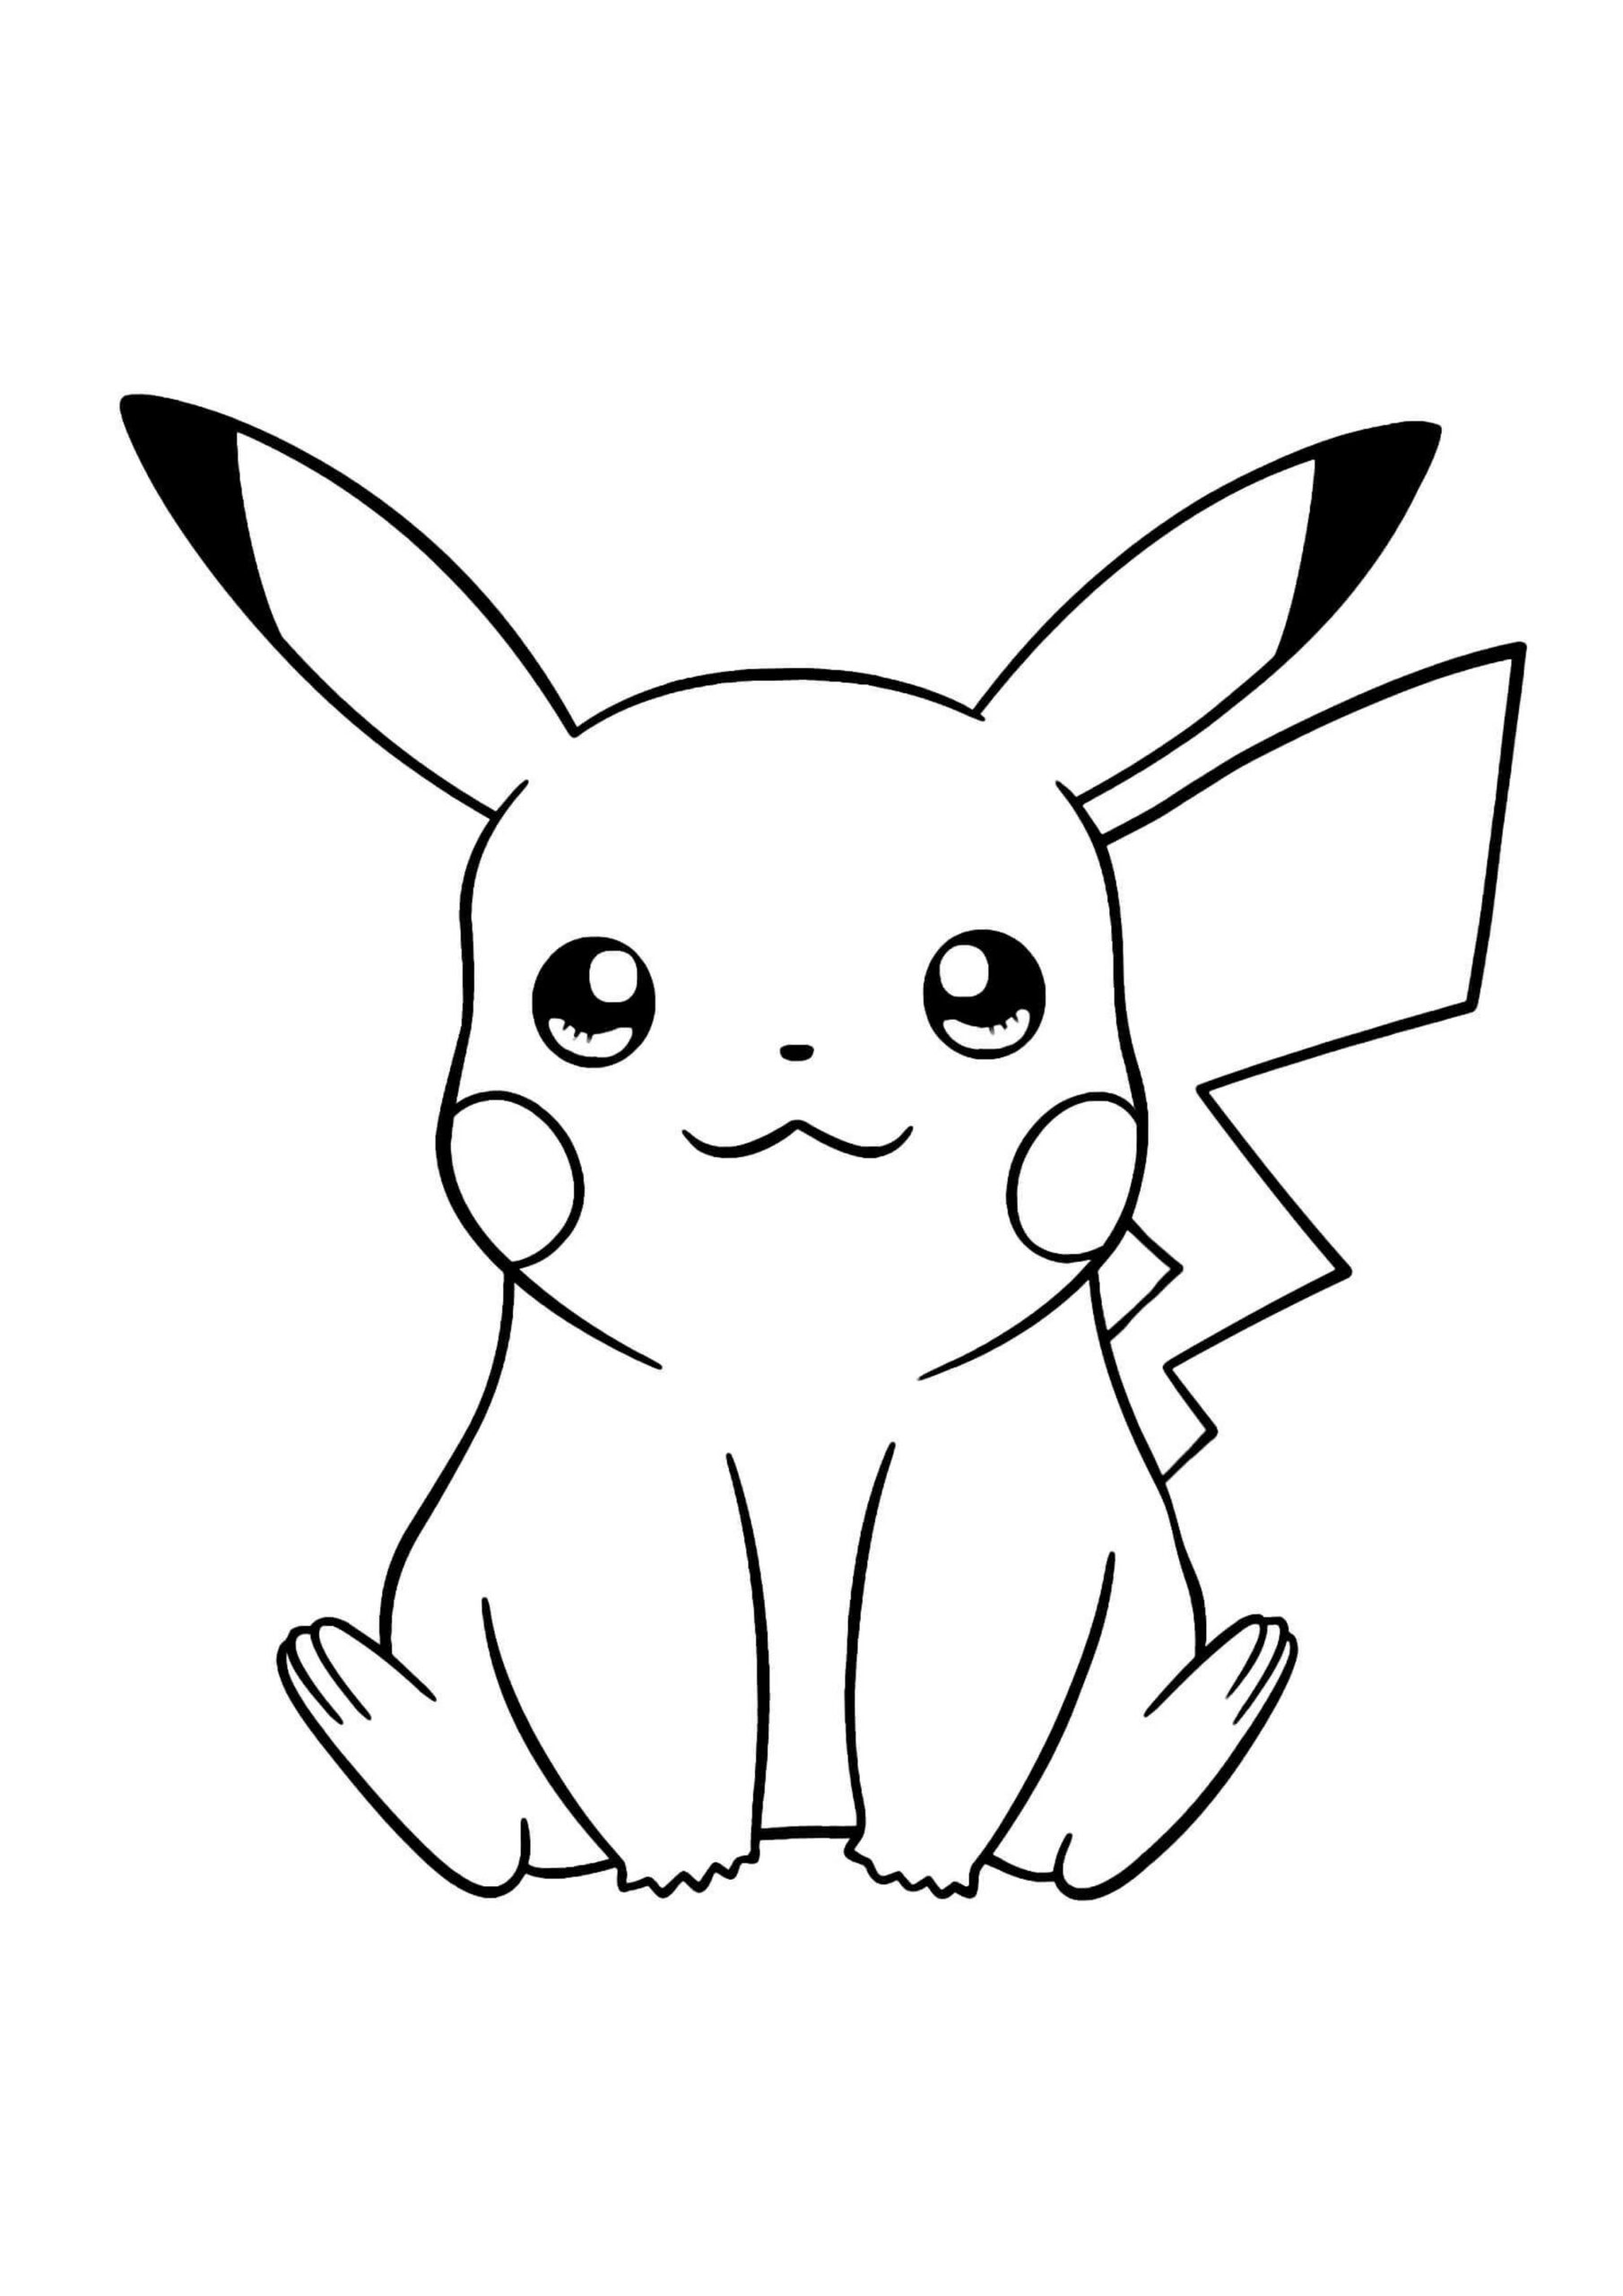 Desenhos de Satoshi e Pikachu para Colorir e Imprimir